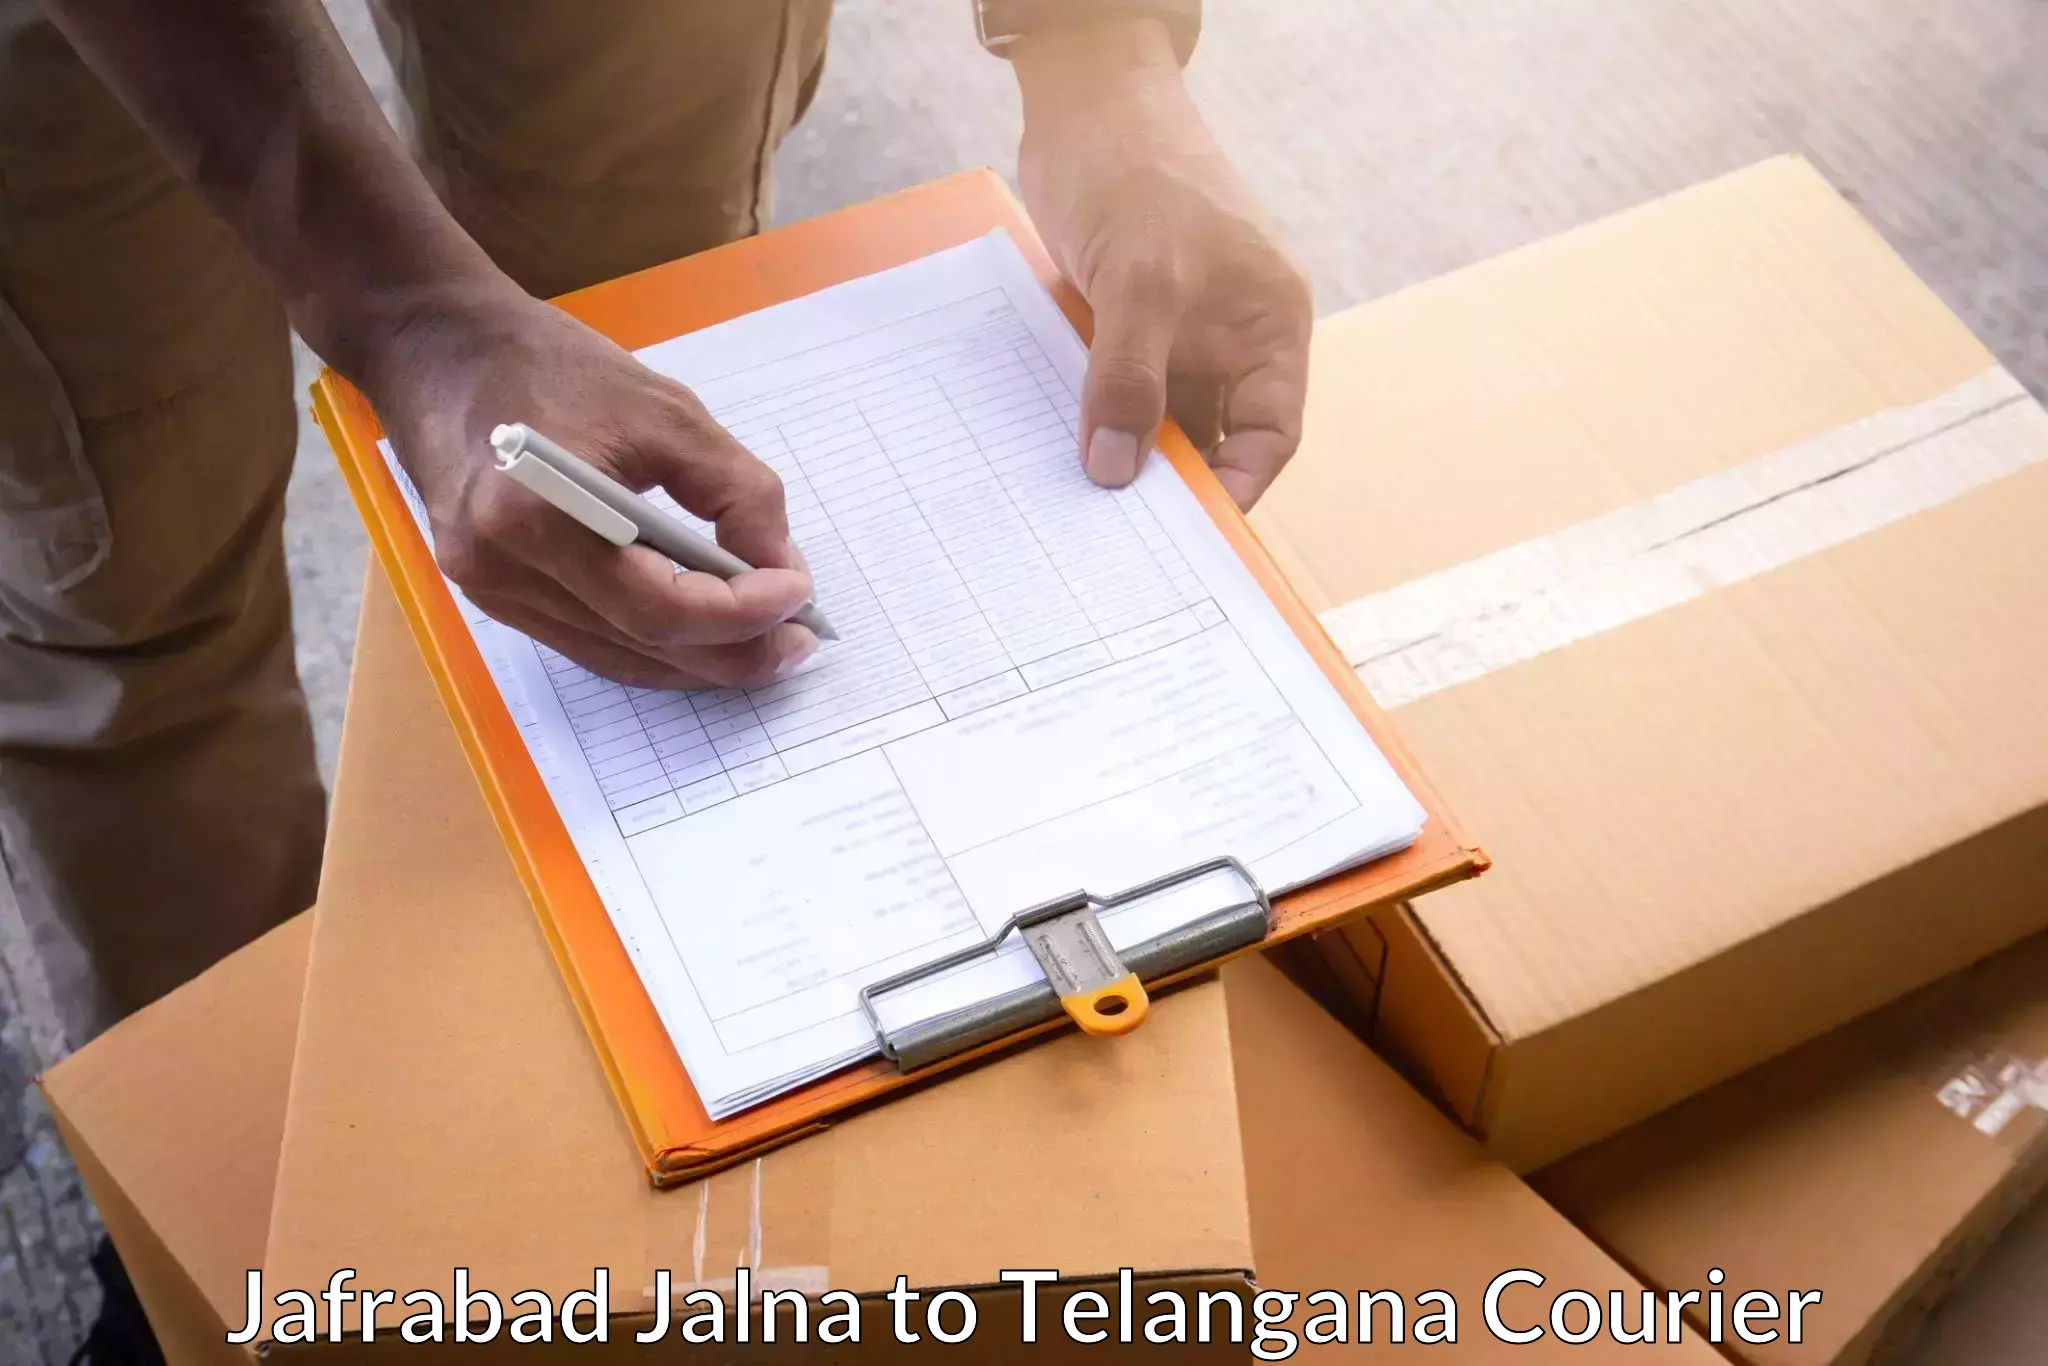 Affordable logistics services Jafrabad Jalna to Adilabad